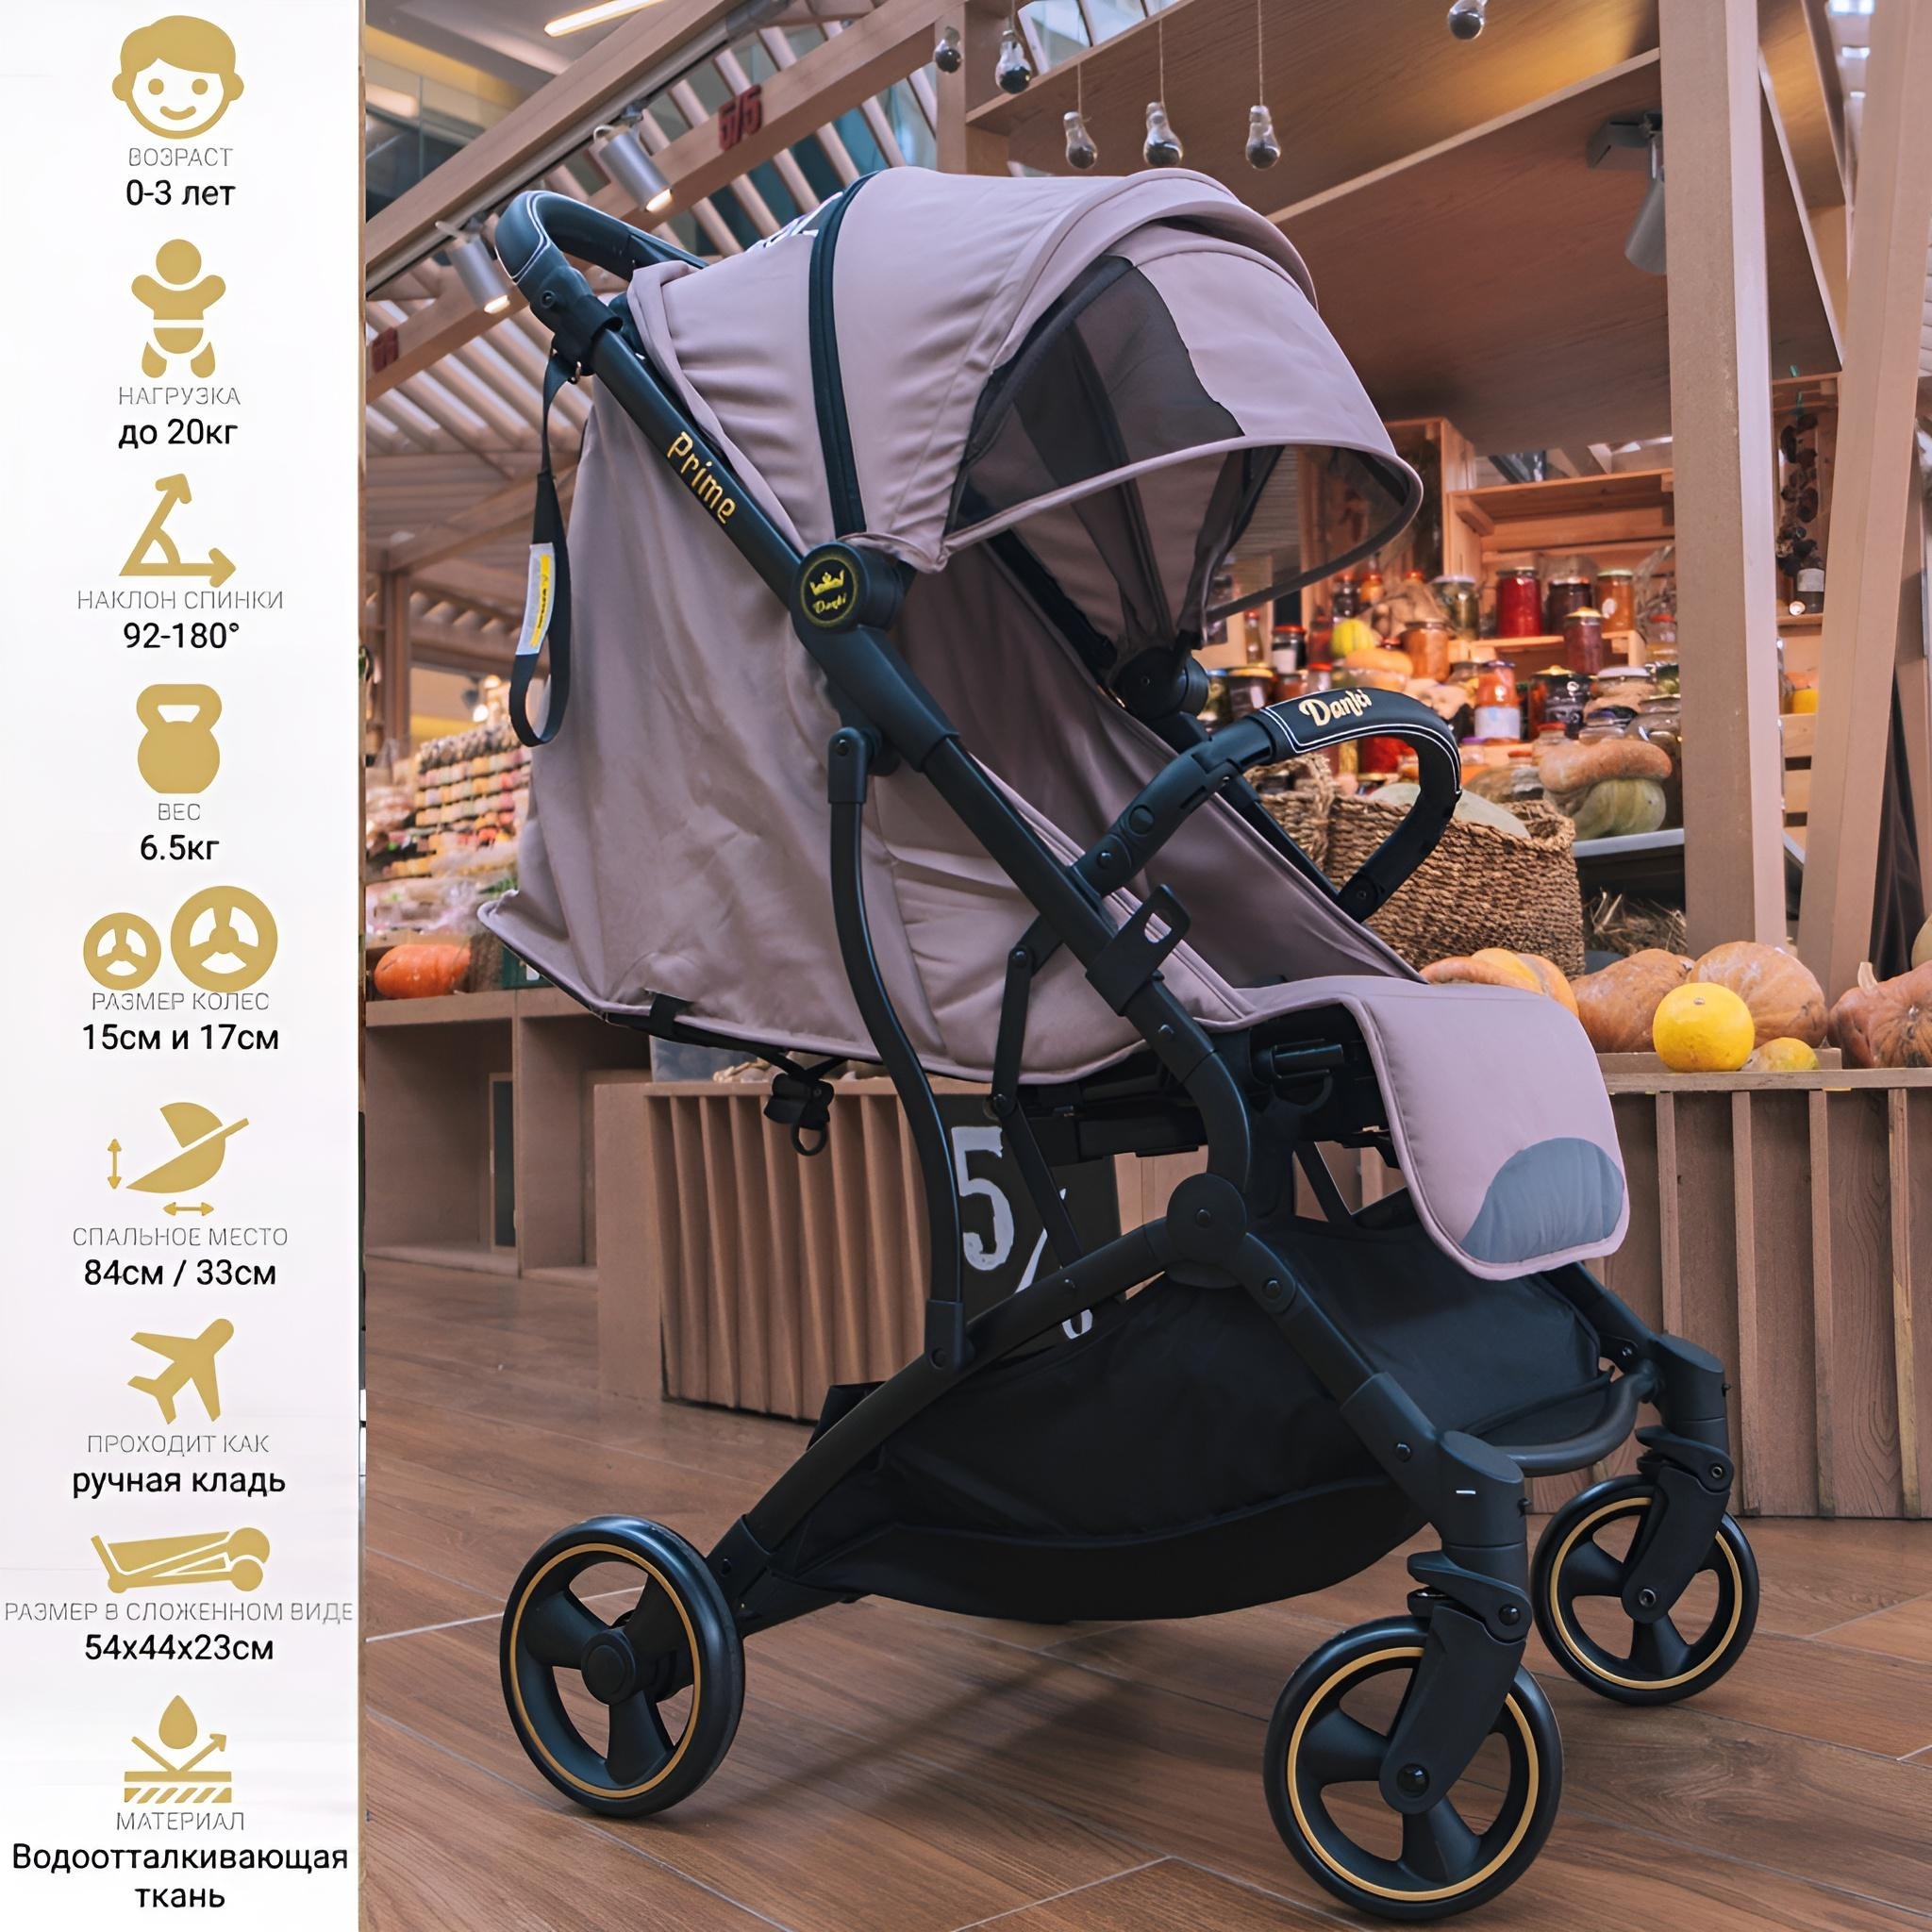 купить коляску для новорожденных Espiro Next Up Chrome в Минске